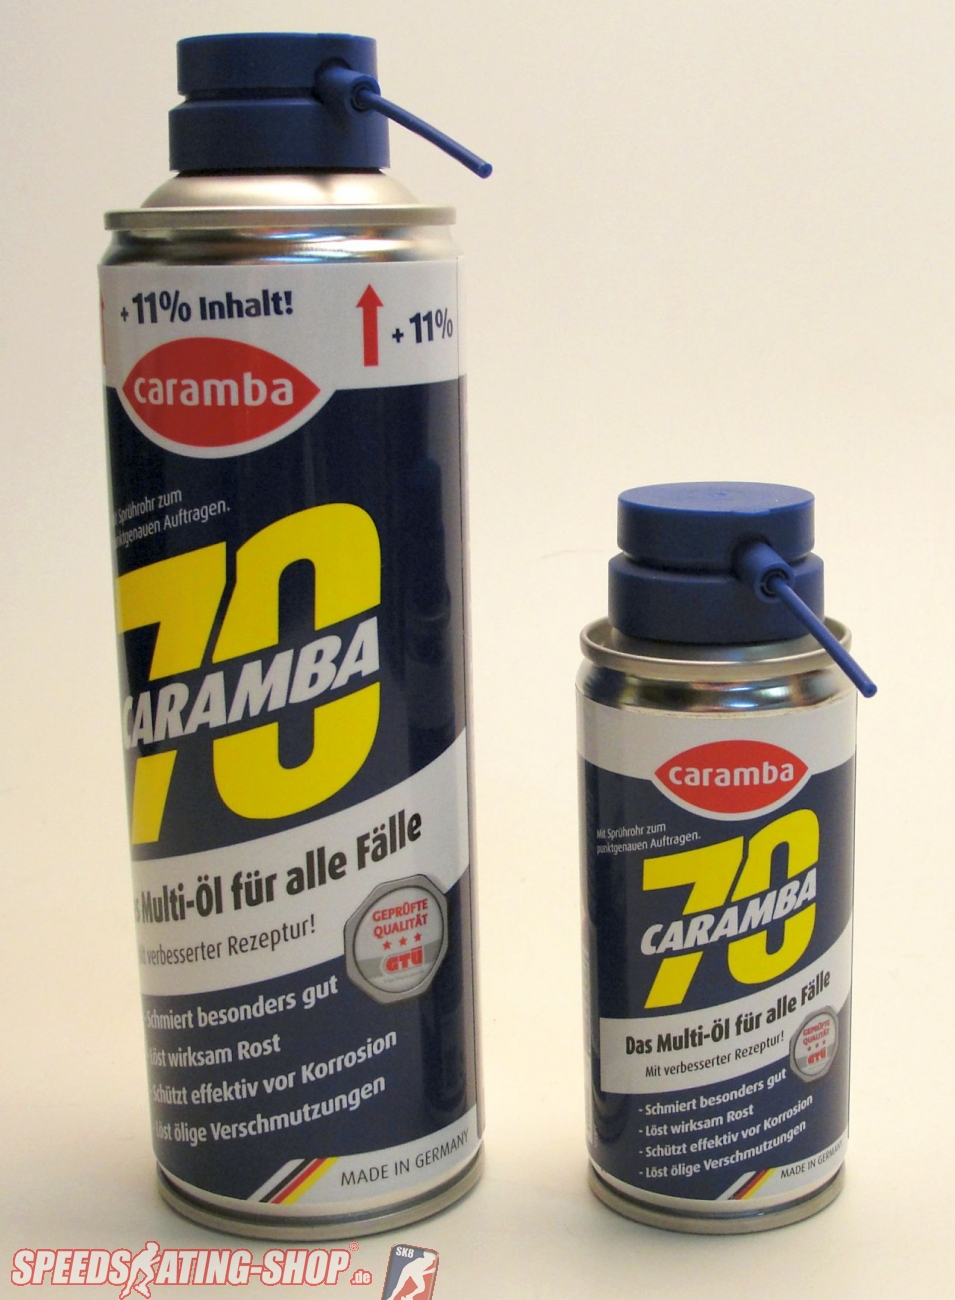 Caramba 70 Super Plus Oil  Jetzt sicher und günstig im Speedskating Shop  kaufen